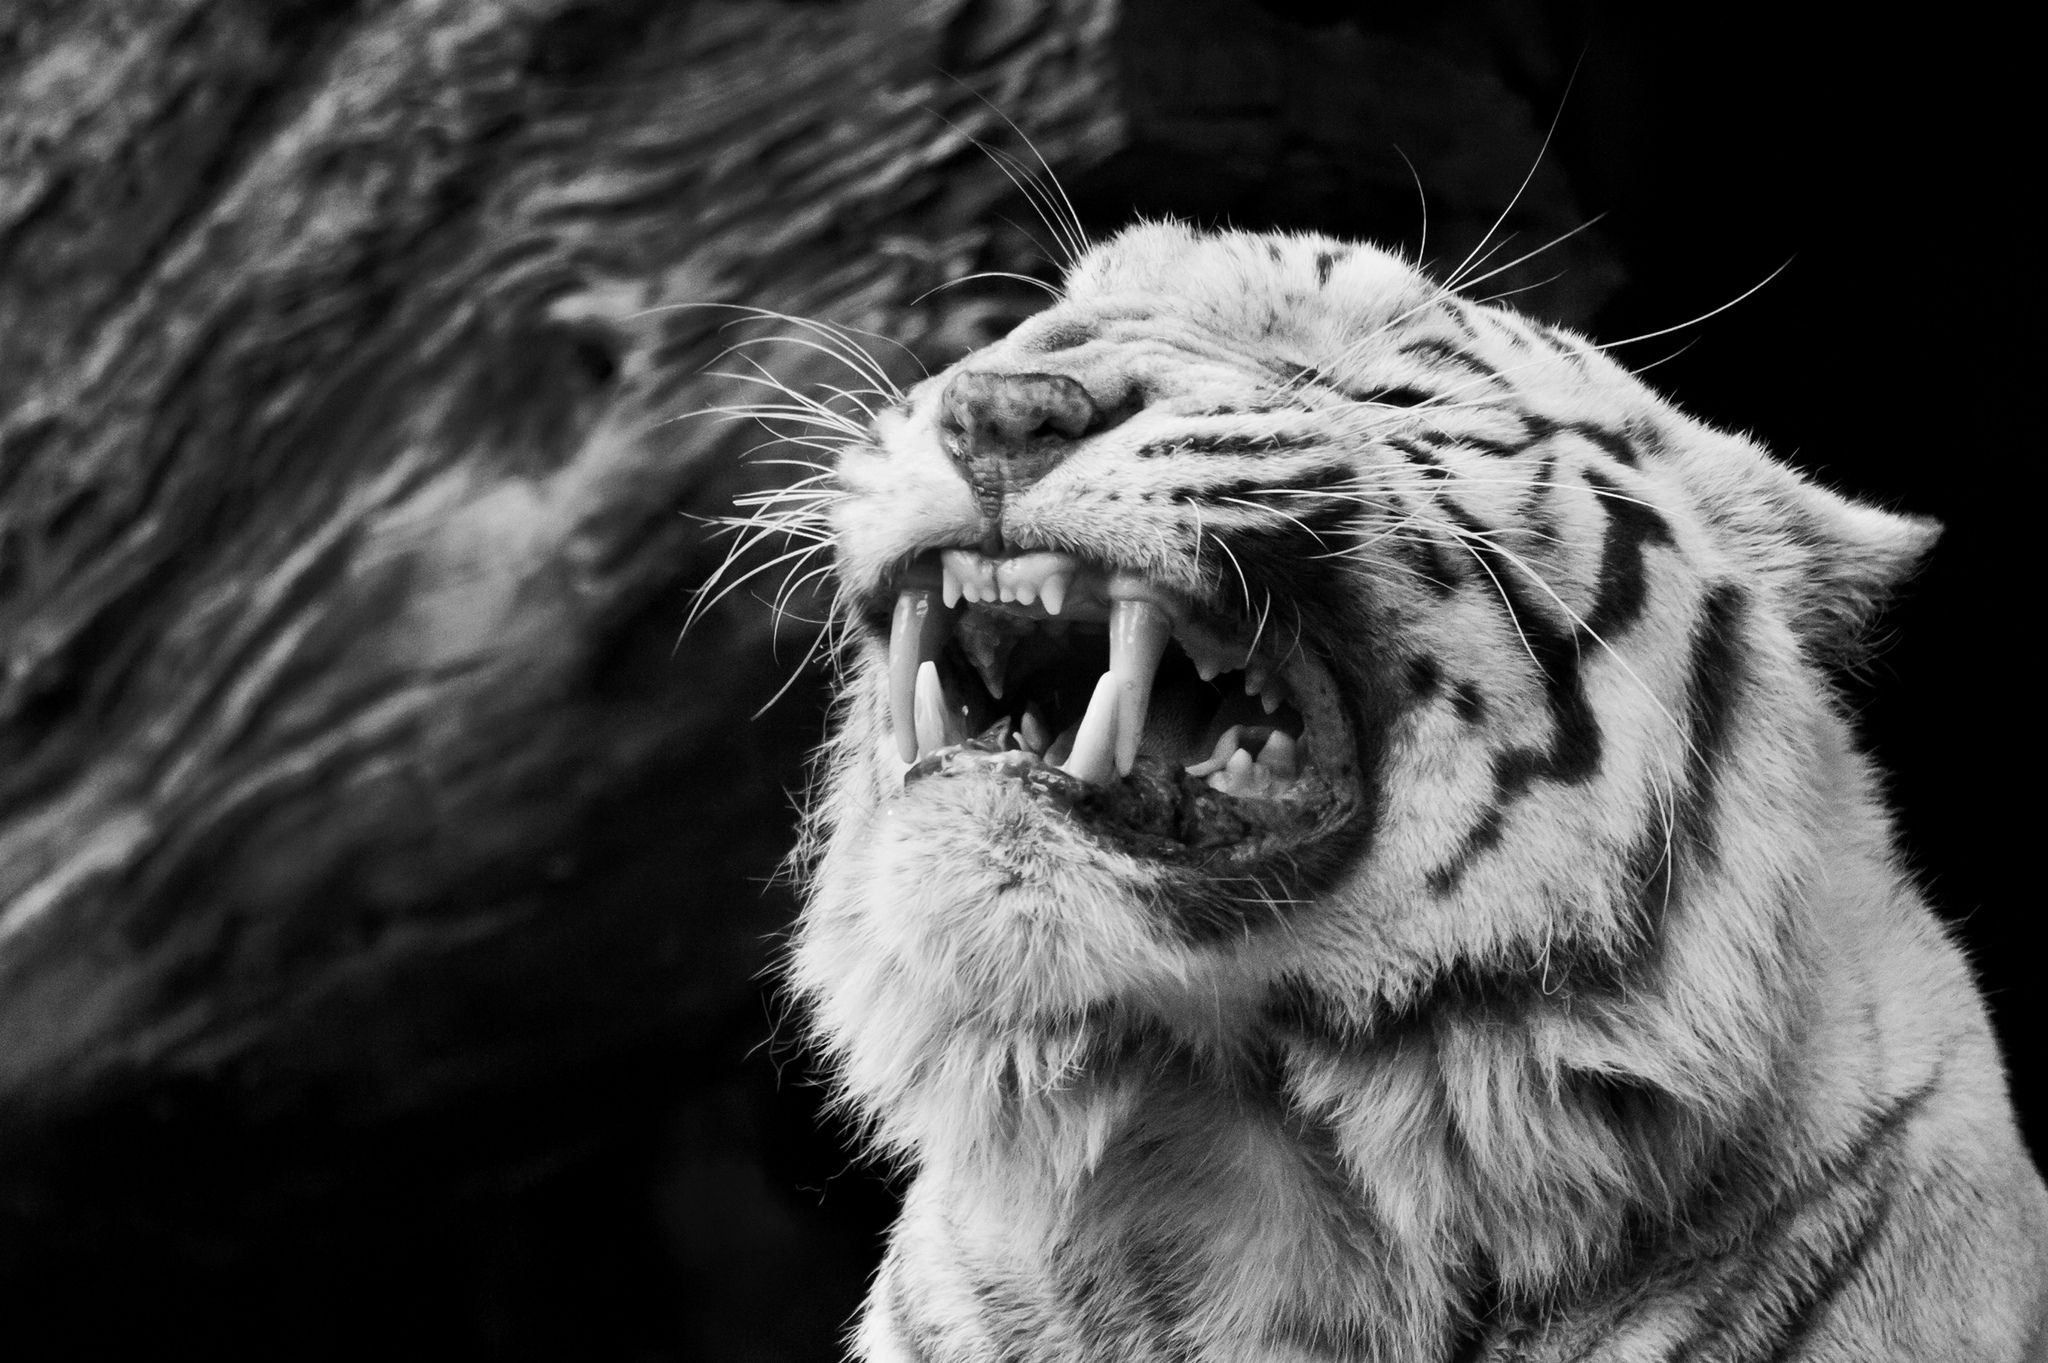 big, Cats, Tigers, Roar, Teeth, Animals, Tiger, B w Wallpaper